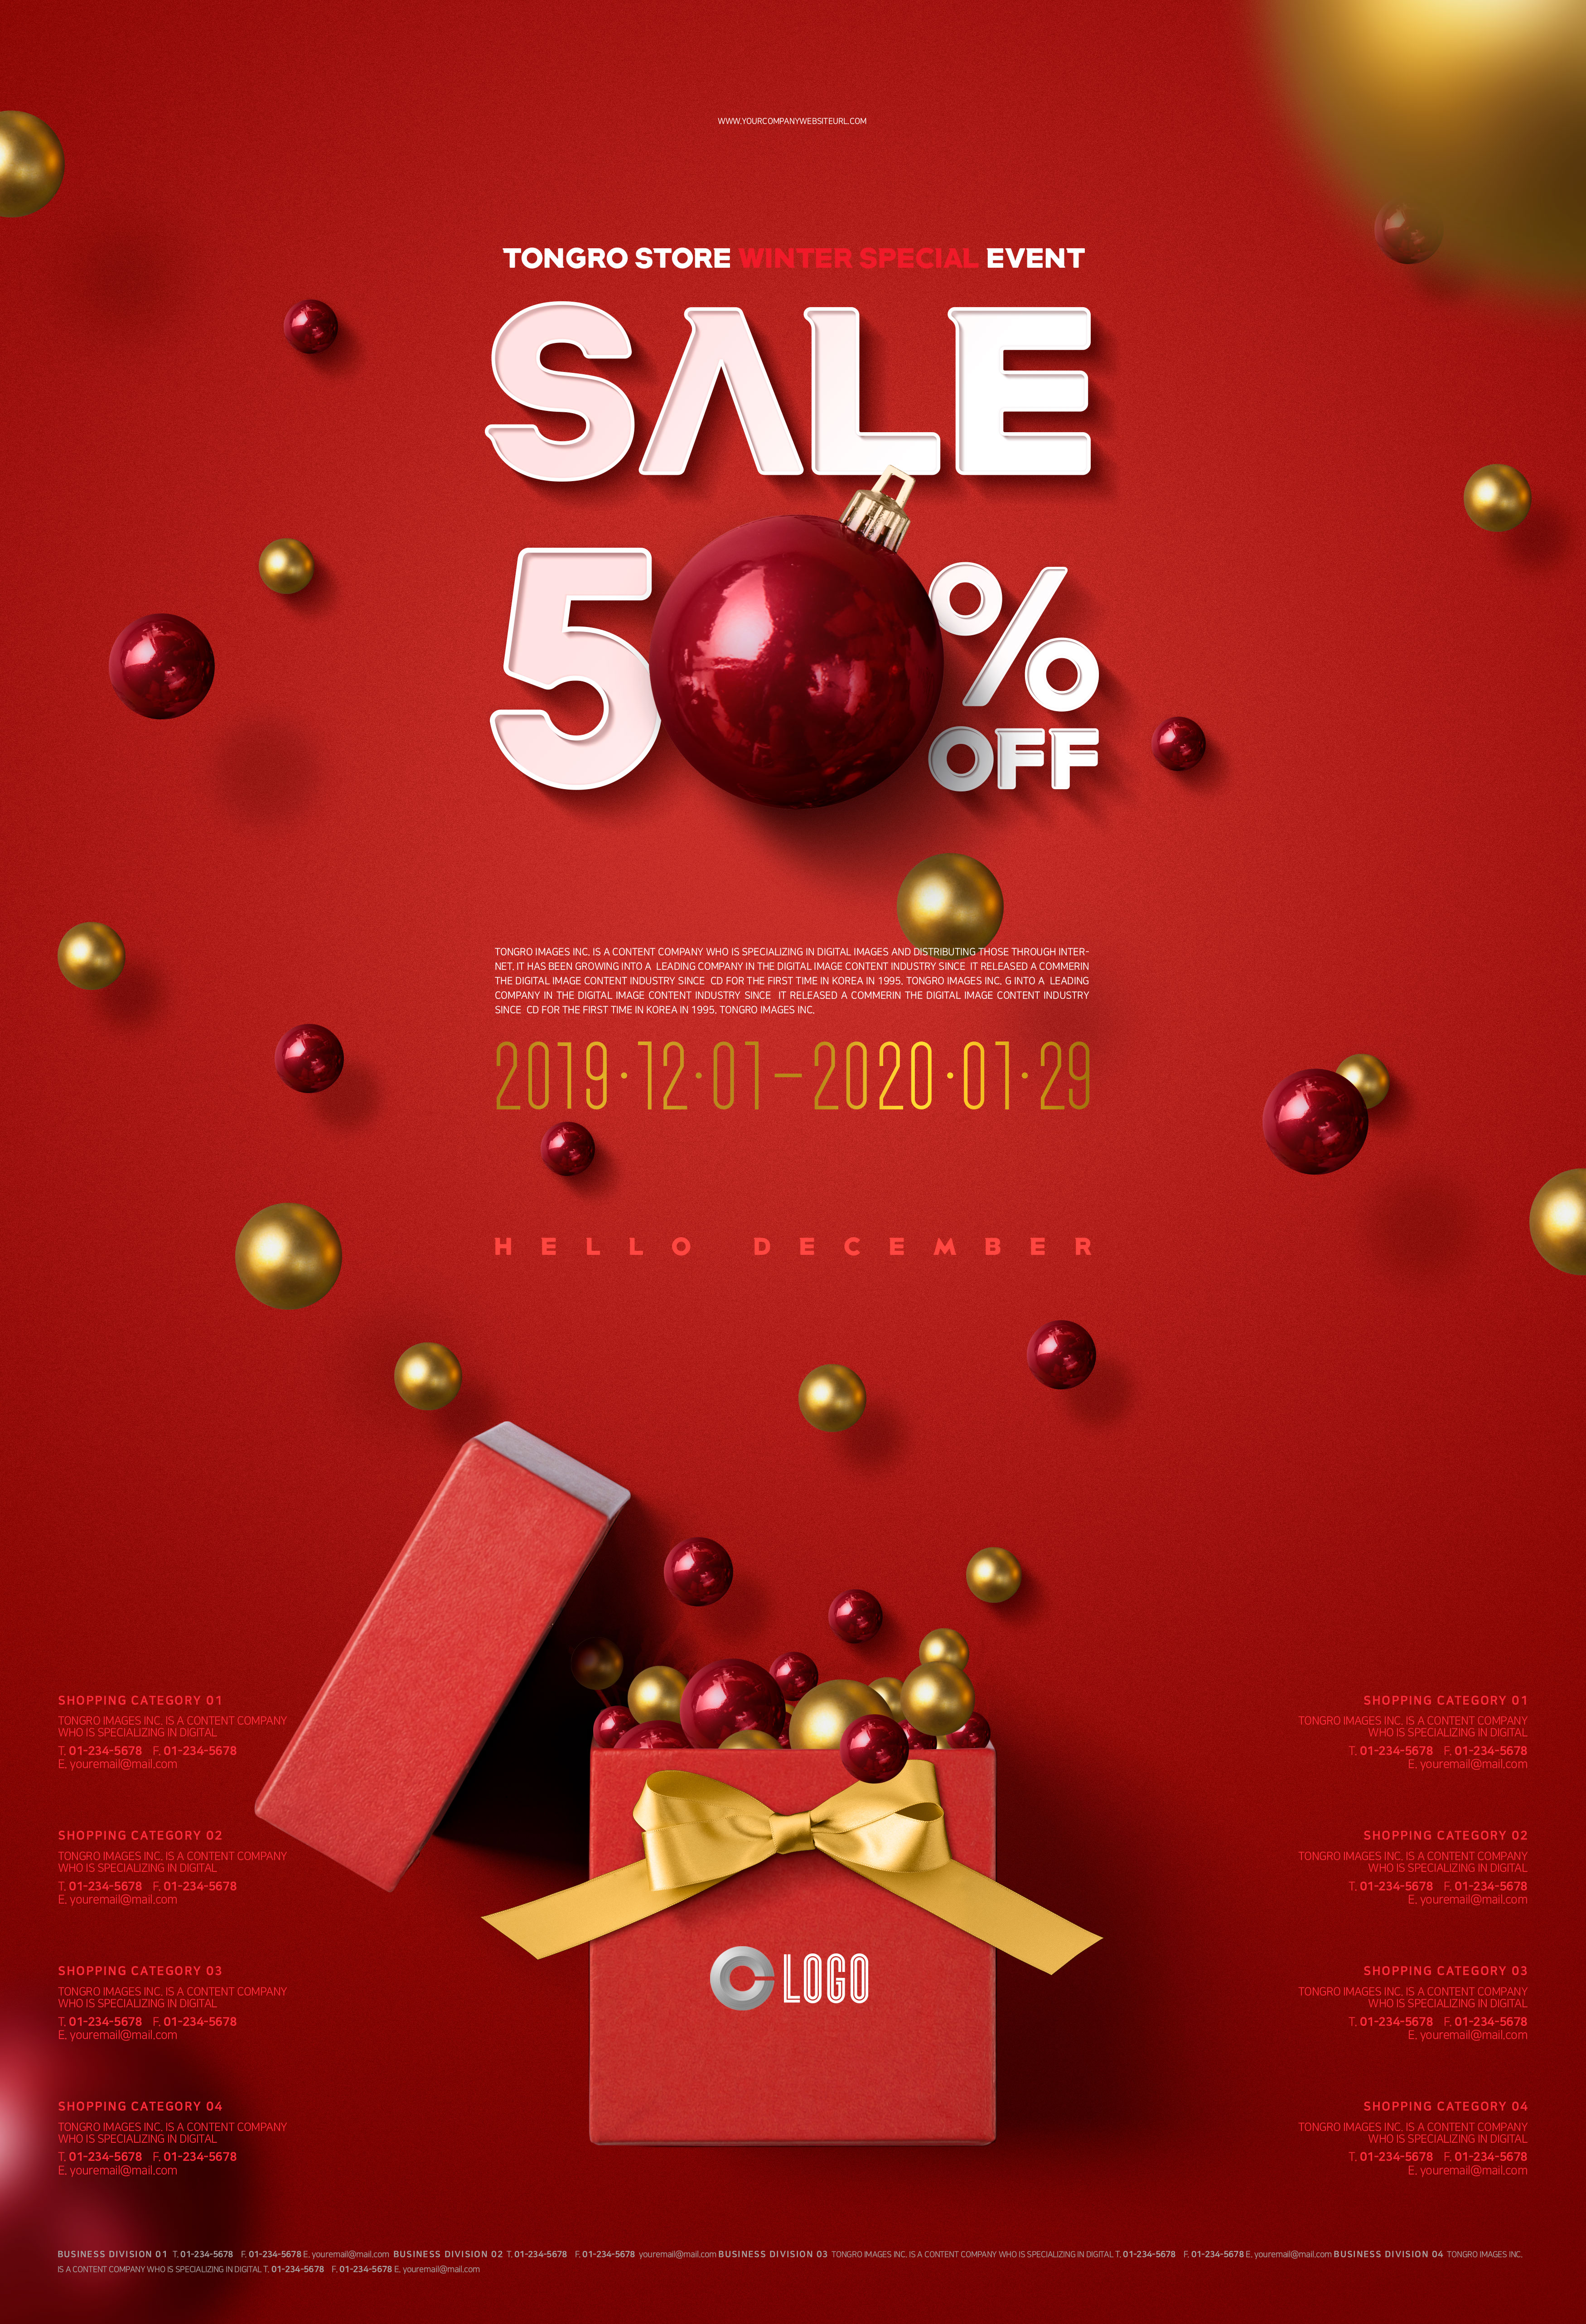 圣诞假期购物半价促销活动宣传海报模板插图